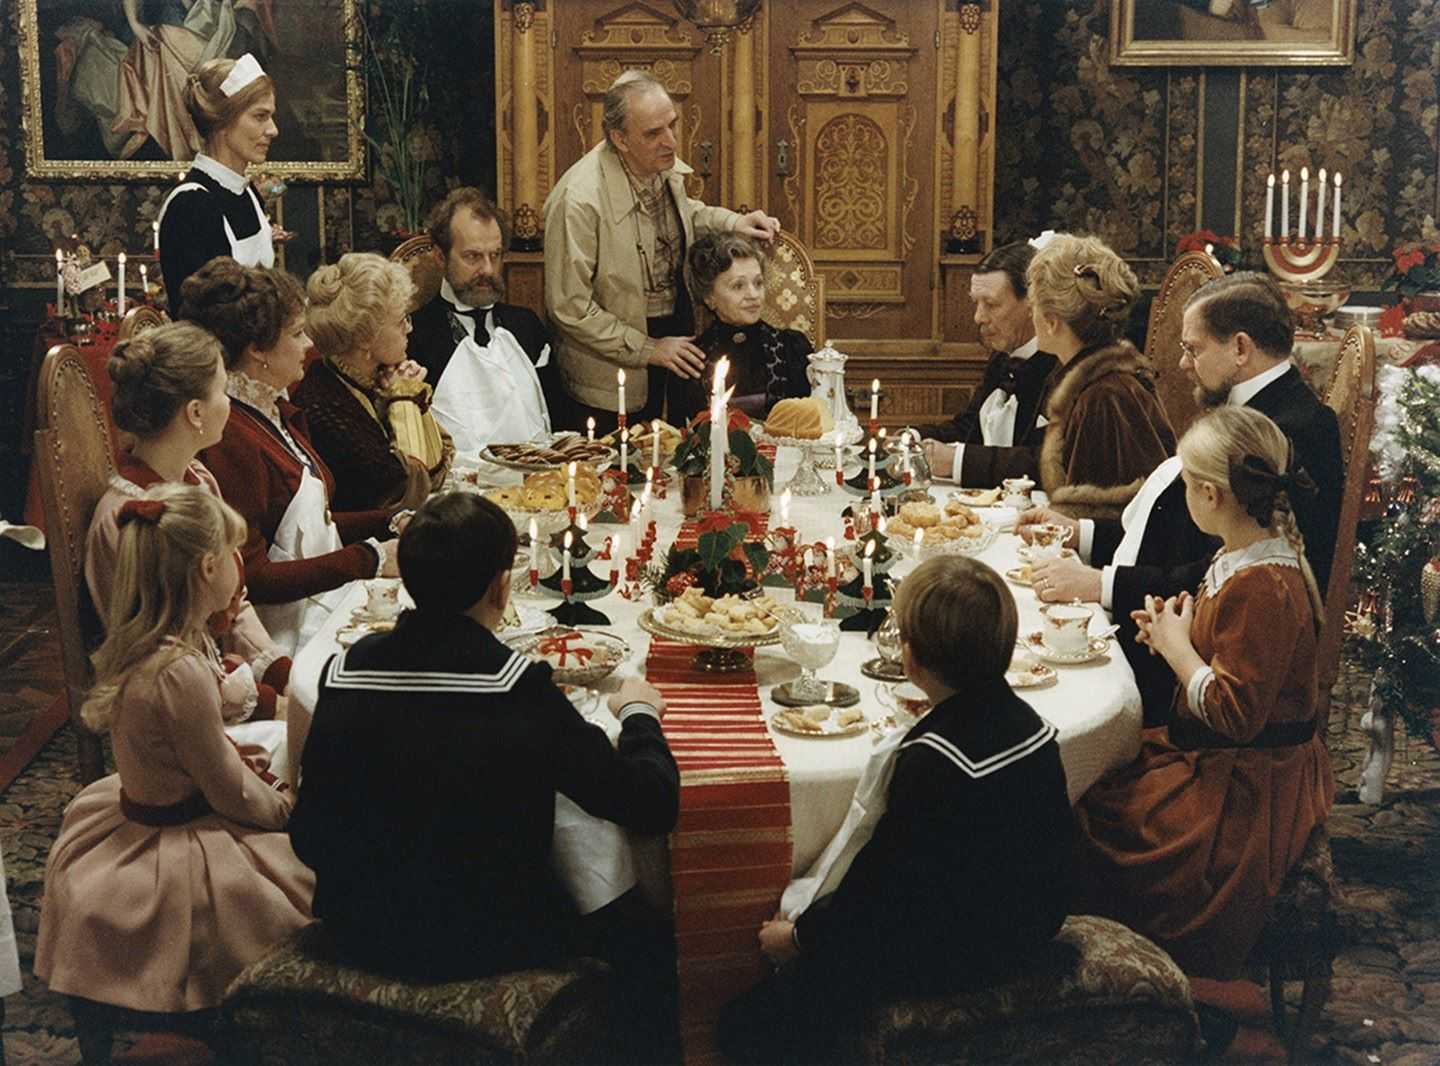 Ingmar Bergman directing the Ekdahl family Christmas dinner scene in Fanny and Alexander (1982)